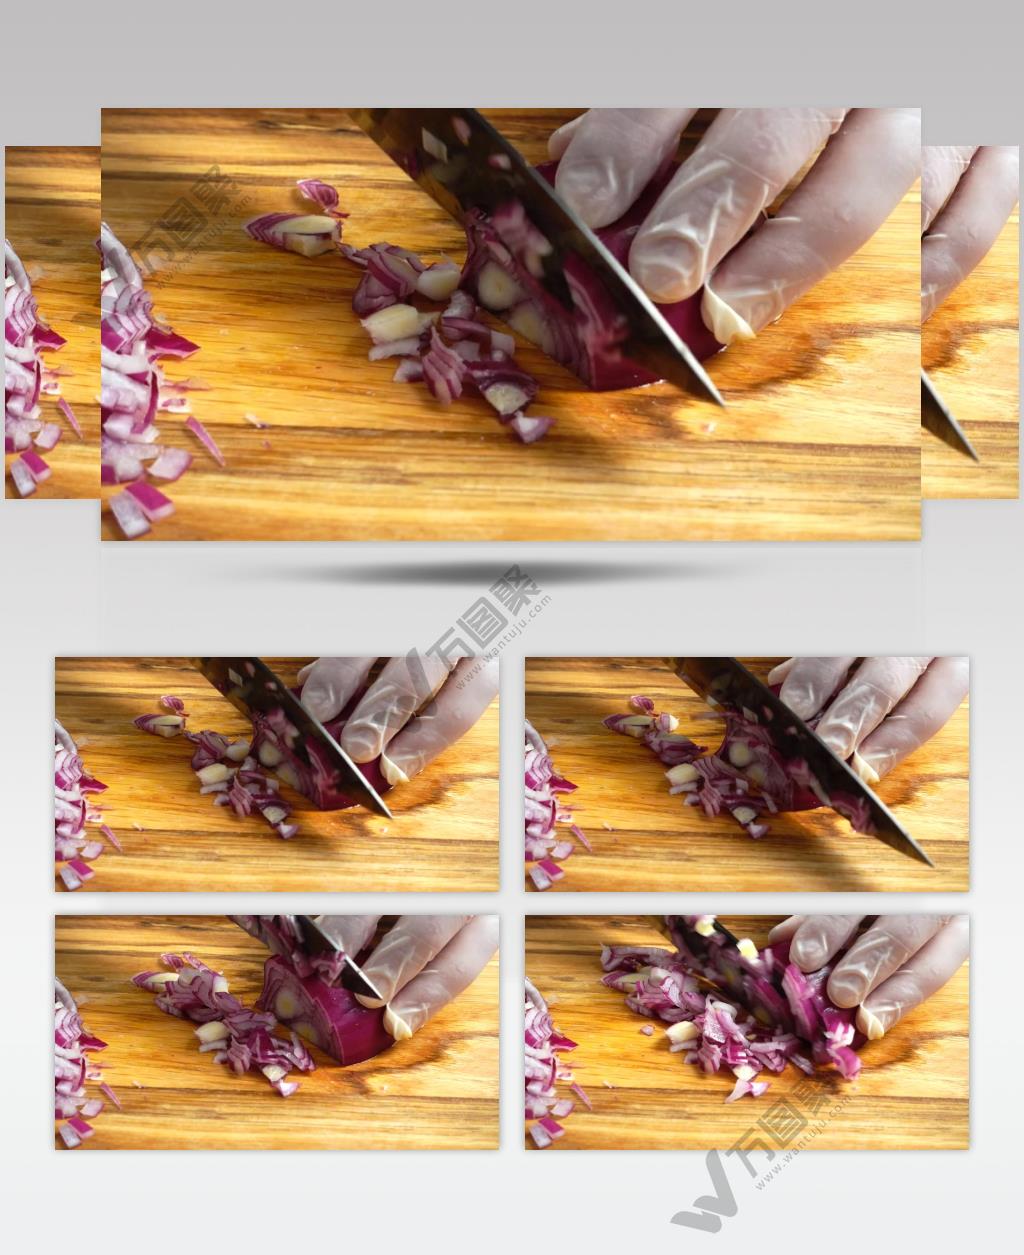  高清摄影厨房里的厨师用手切洋葱